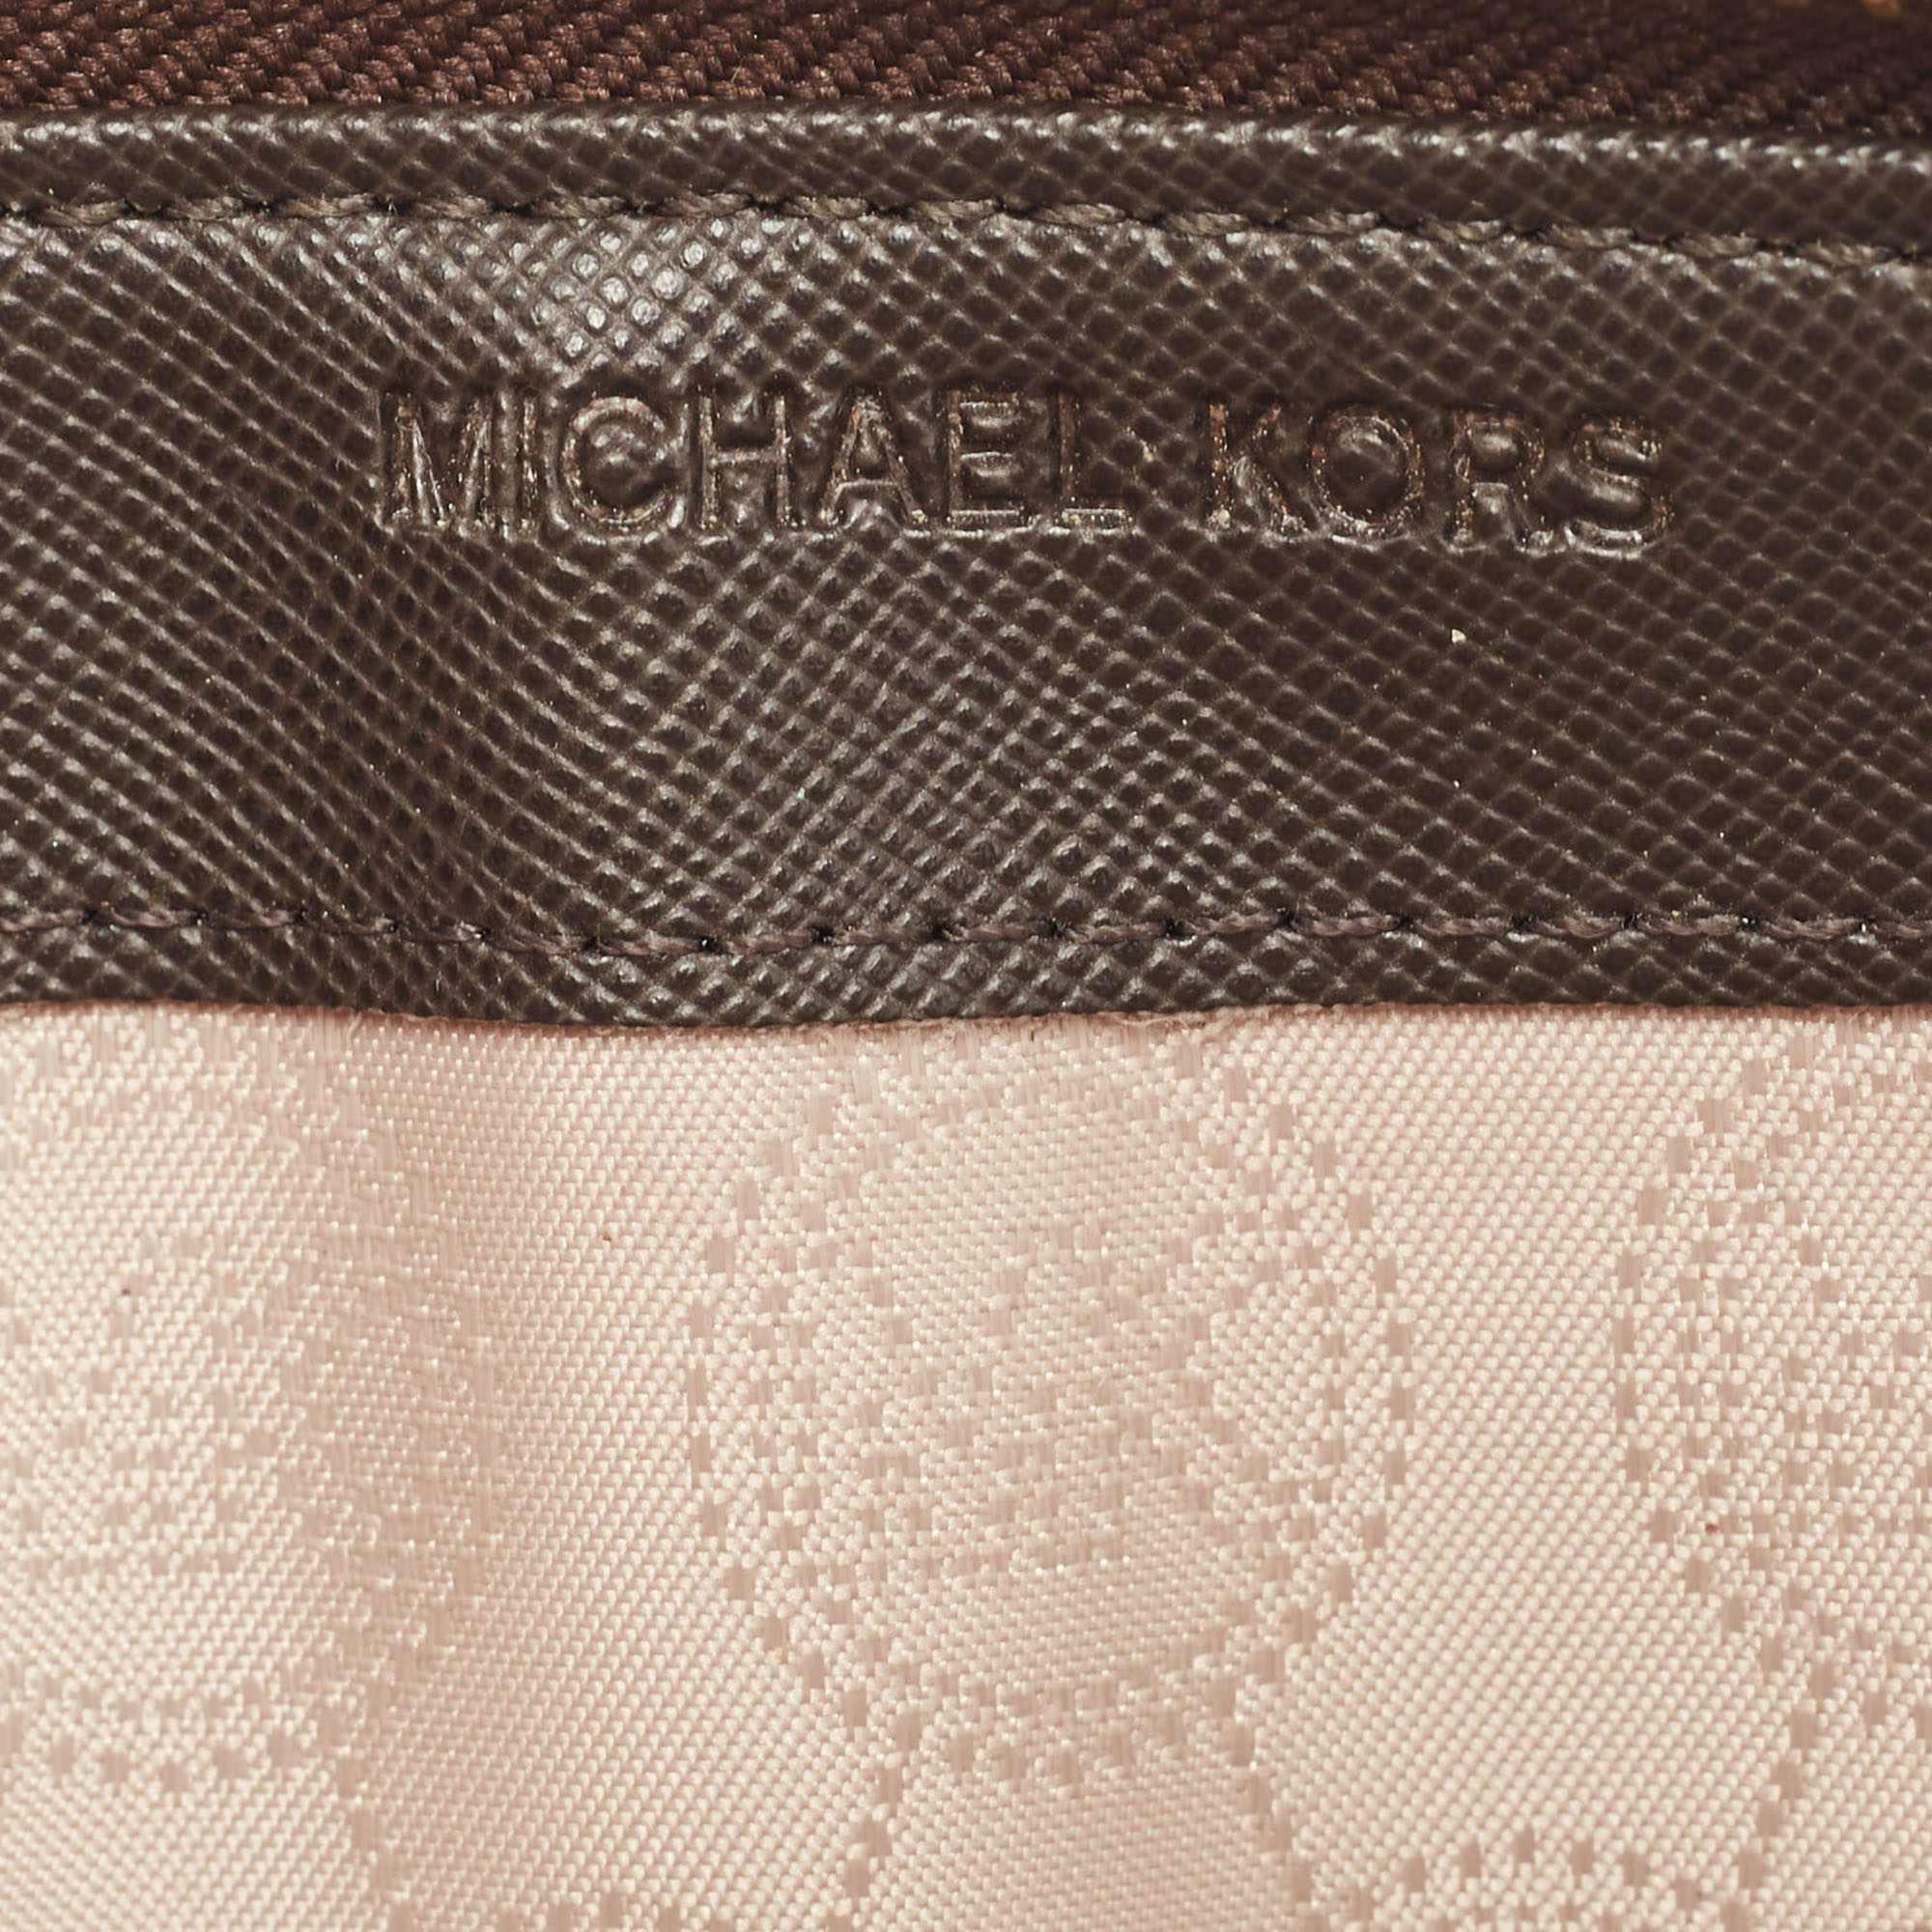 Michael Kors Dark Brown Monogram Coated Canvas Zip Around Wallet